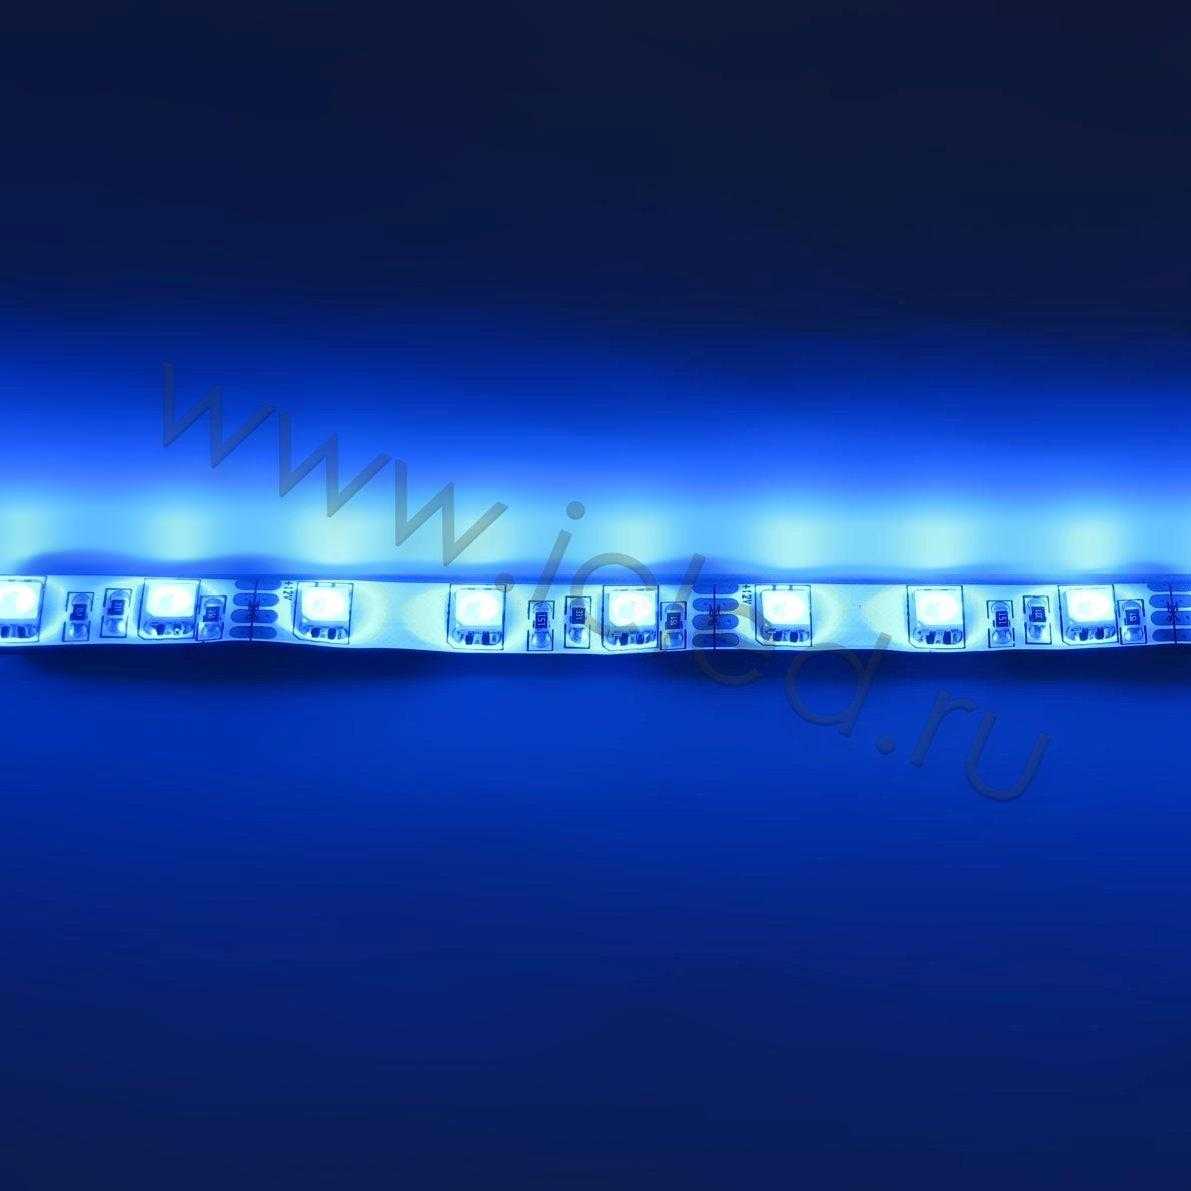 Влагозащищенные светодиодные ленты Светодиодная лента LUX class, 5050, 60 led/m, RGB, 12V, IP65 Icled